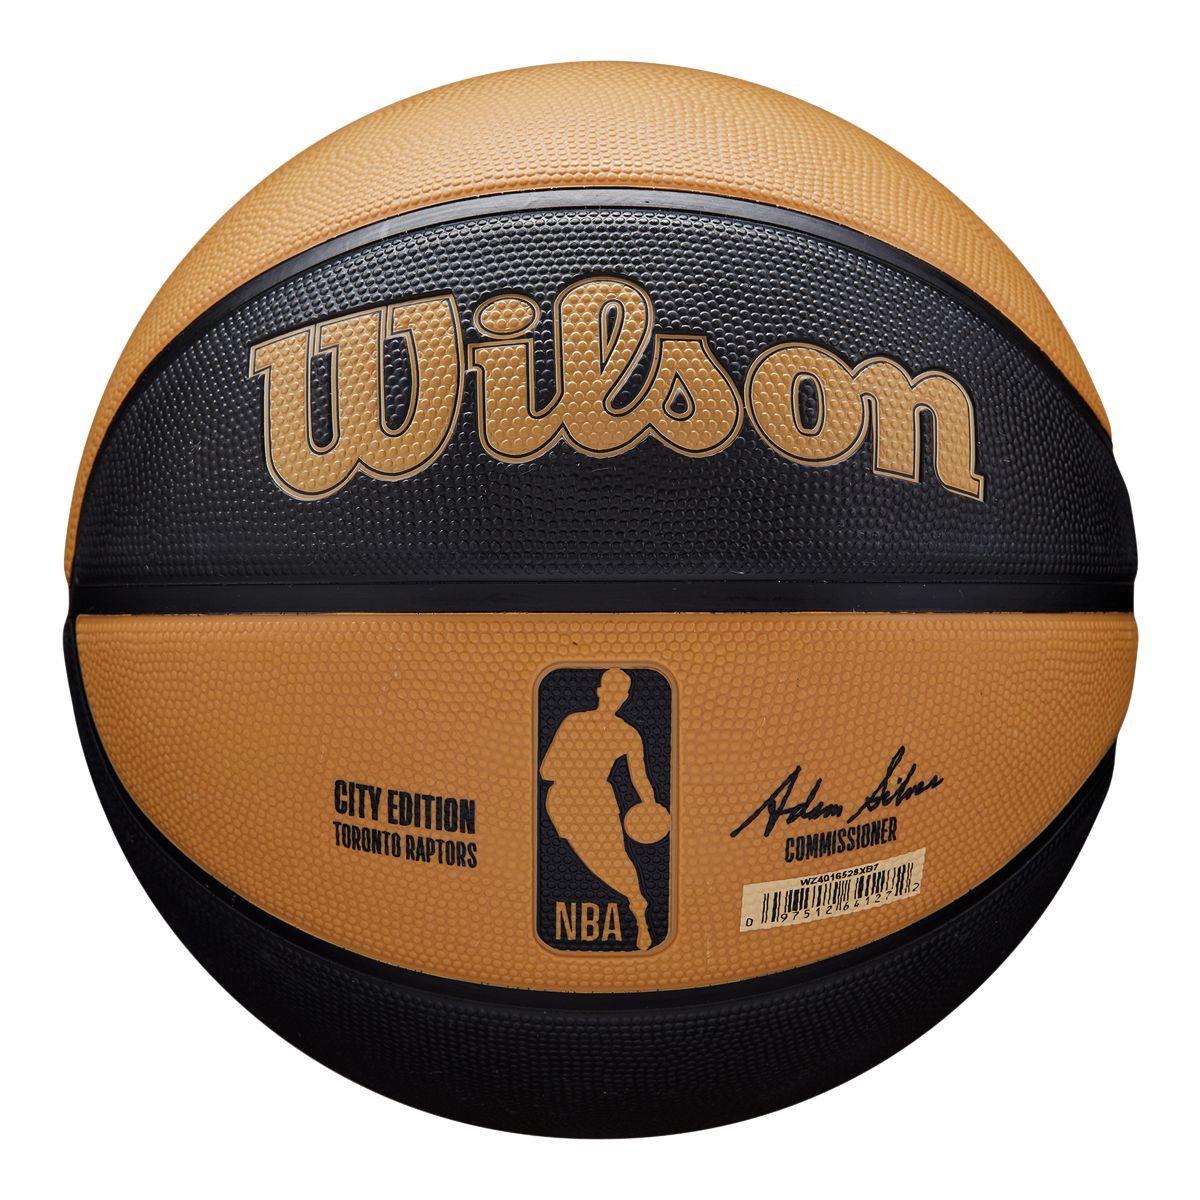 WILSON NBA AUTHENTIC INDOOR OUTDOOR BASKETBALL SIZE 7 Brown - BROWN